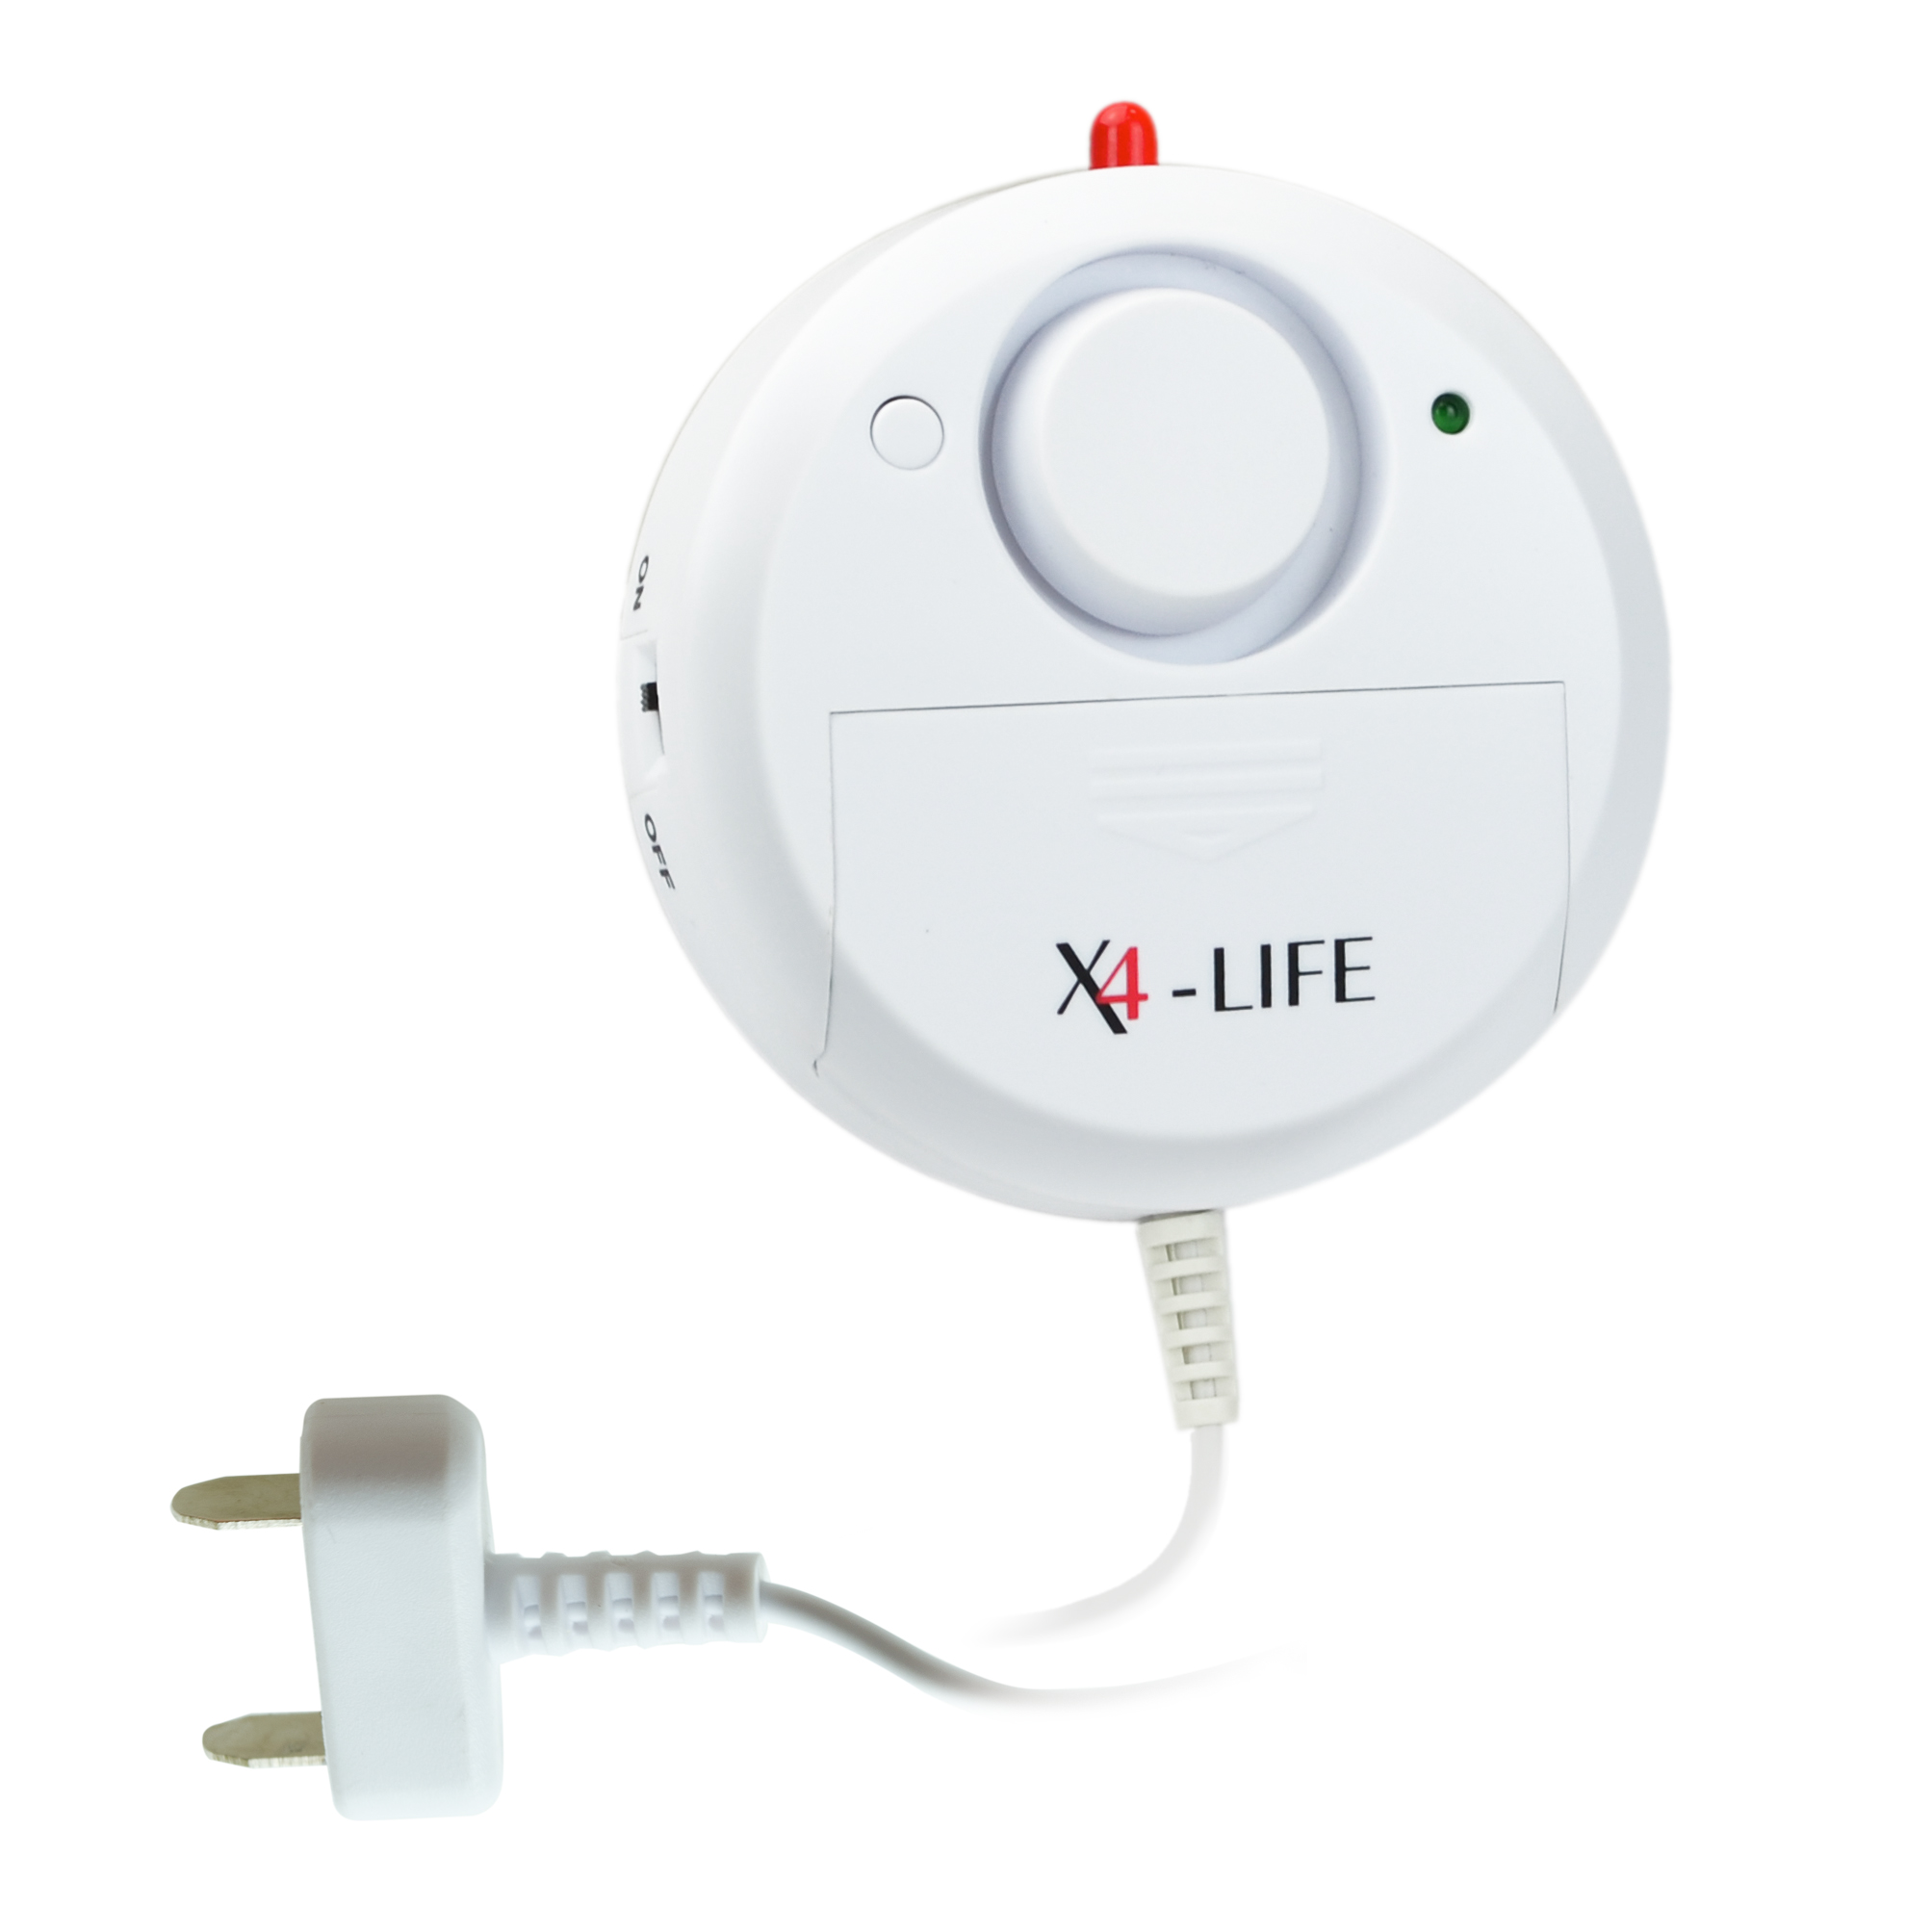 X4-LIFE Security Wasser-Alarm Wassermelder Wasserwächter